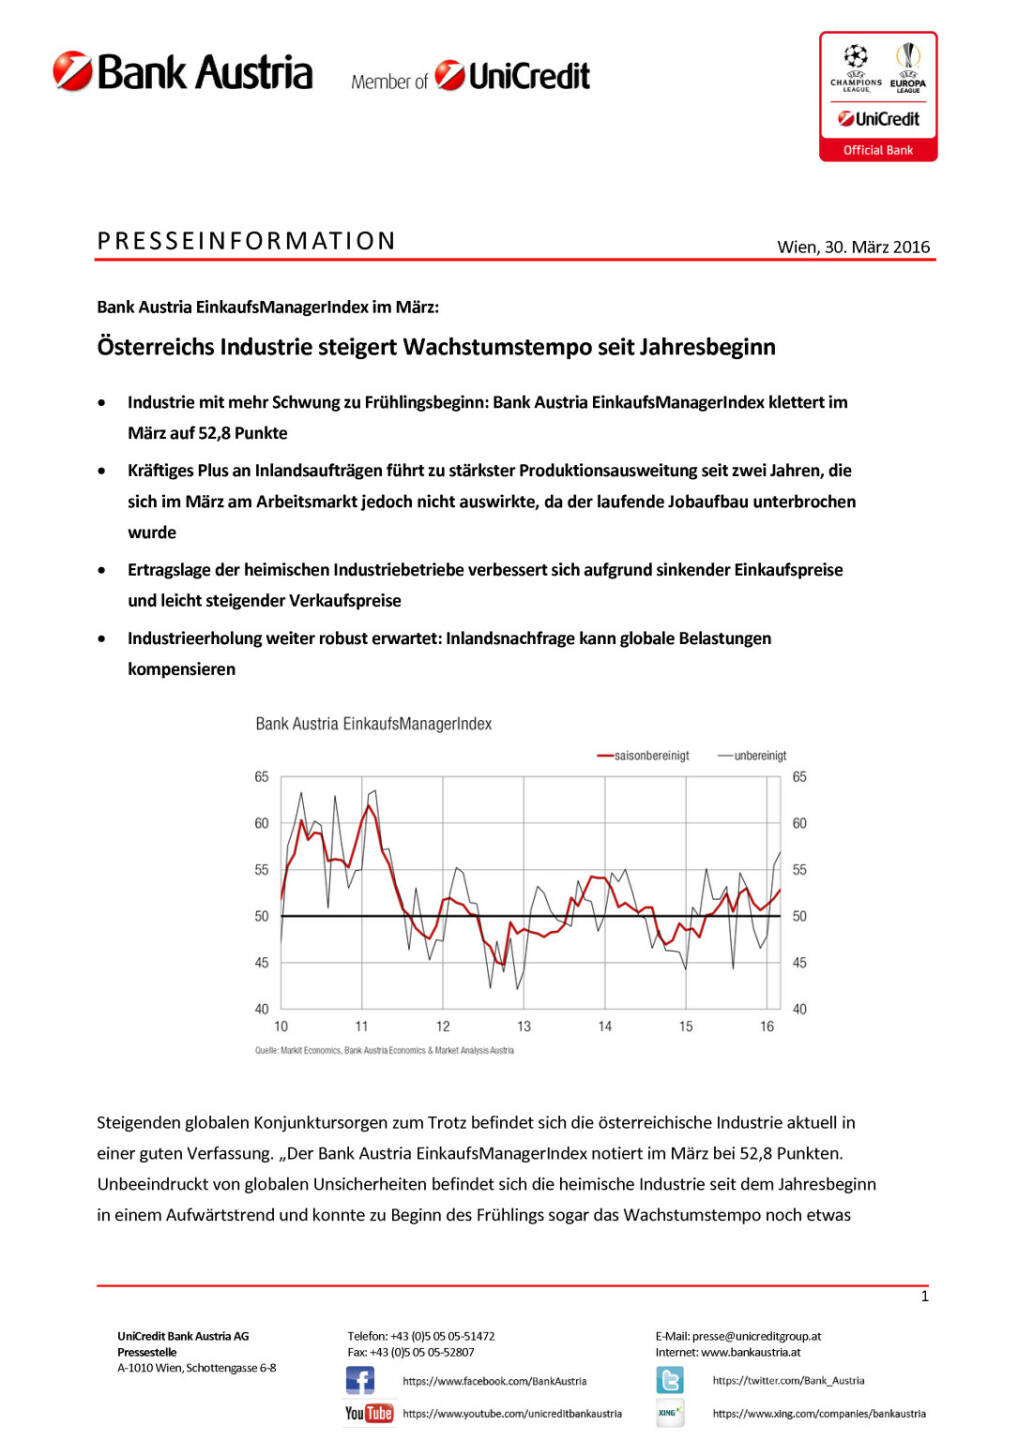 Bank Austria EinkaufsManagerIndex im März: Österreichs Industrie steigert Wachstumstempo seit Jahresbeginn, Seite 1/4, komplettes Dokument unter http://boerse-social.com/static/uploads/file_824_bank_austria_einkaufsmanagerindex_im_marz_osterreichs_industrie_steigert_wachstumstempo_seit_jahresbeginn.pdf